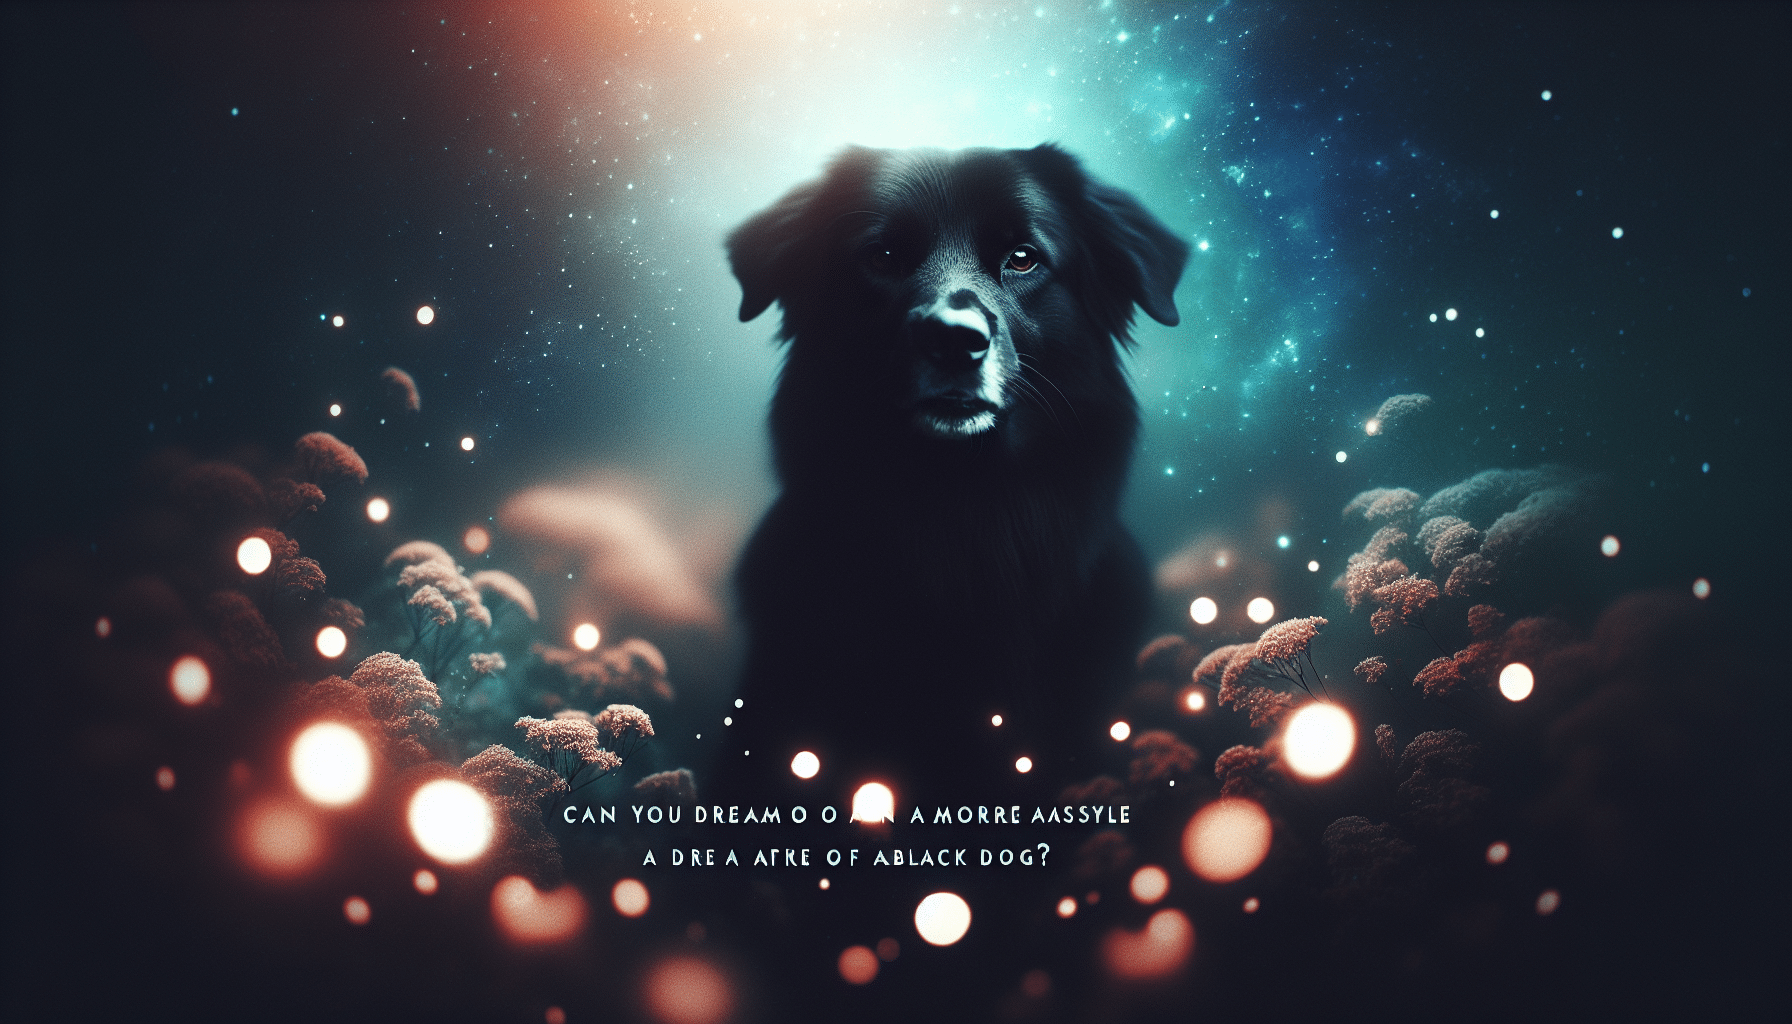 découvrez s'il est possible de rêver d'un chien noir et explorez le monde mystérieux des rêves avec cette question intrigante.